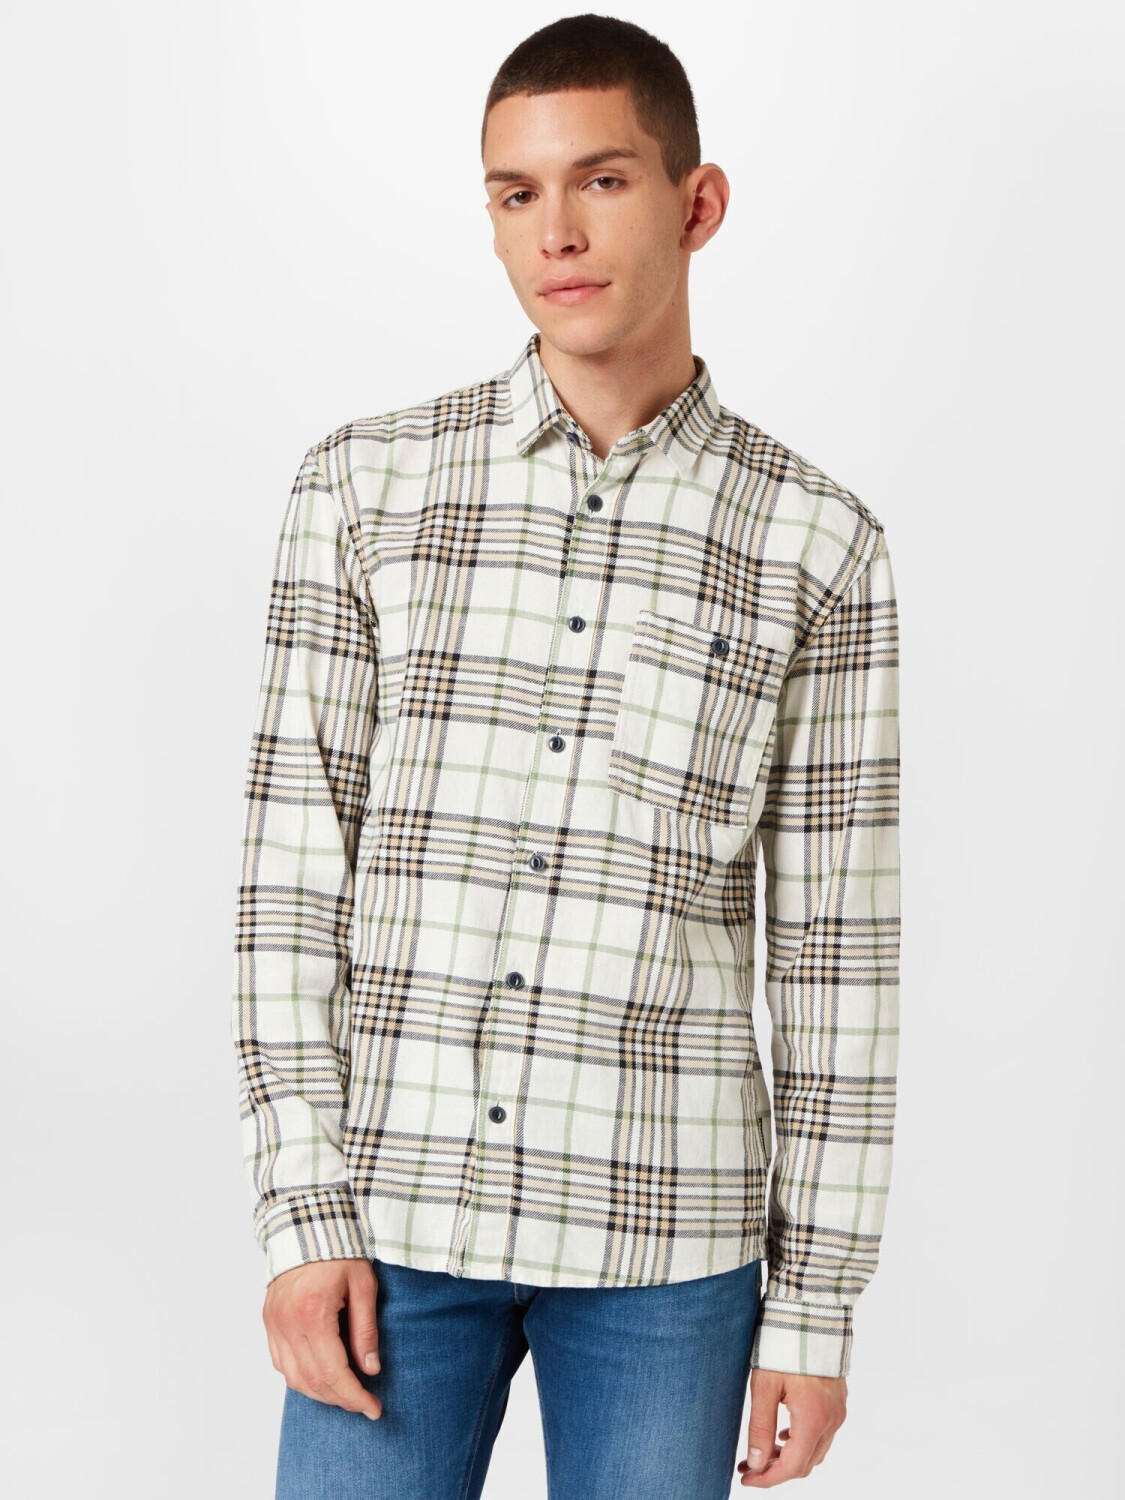 Tom Tailor Denim Hemd mit Karo-Muster (1032385) off white big twill check  ab € 22,99 | Preisvergleich bei